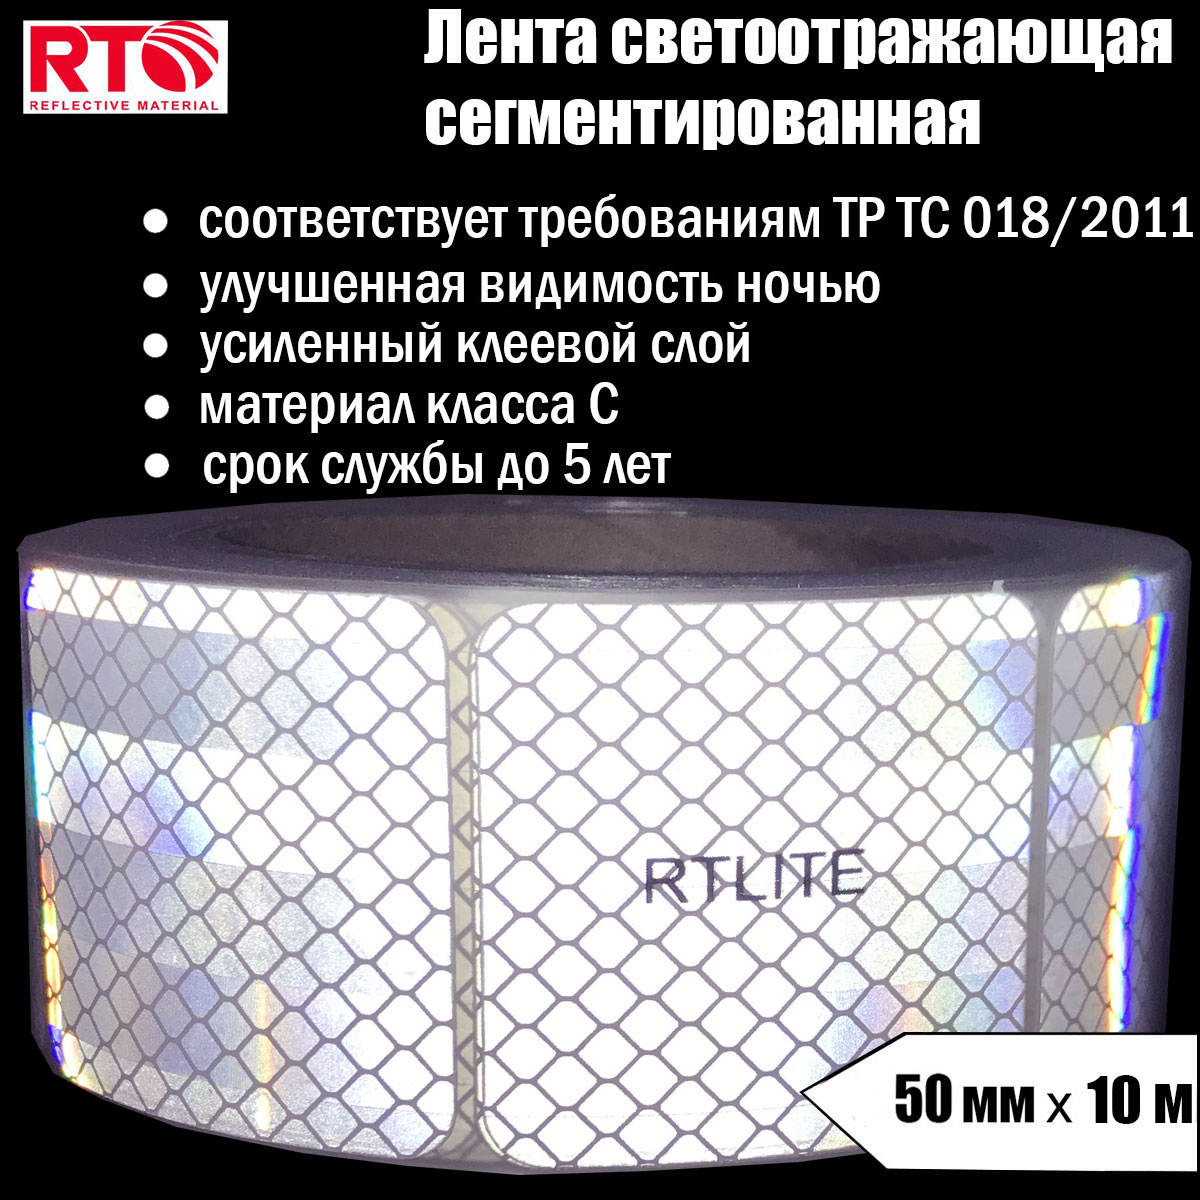 Лента светоотражающая сегментированная RTLITE RT-V104 для контурной маркировки, 50мм х 10м светоотражающая лента 2 5 см 10 ± 1 м белый